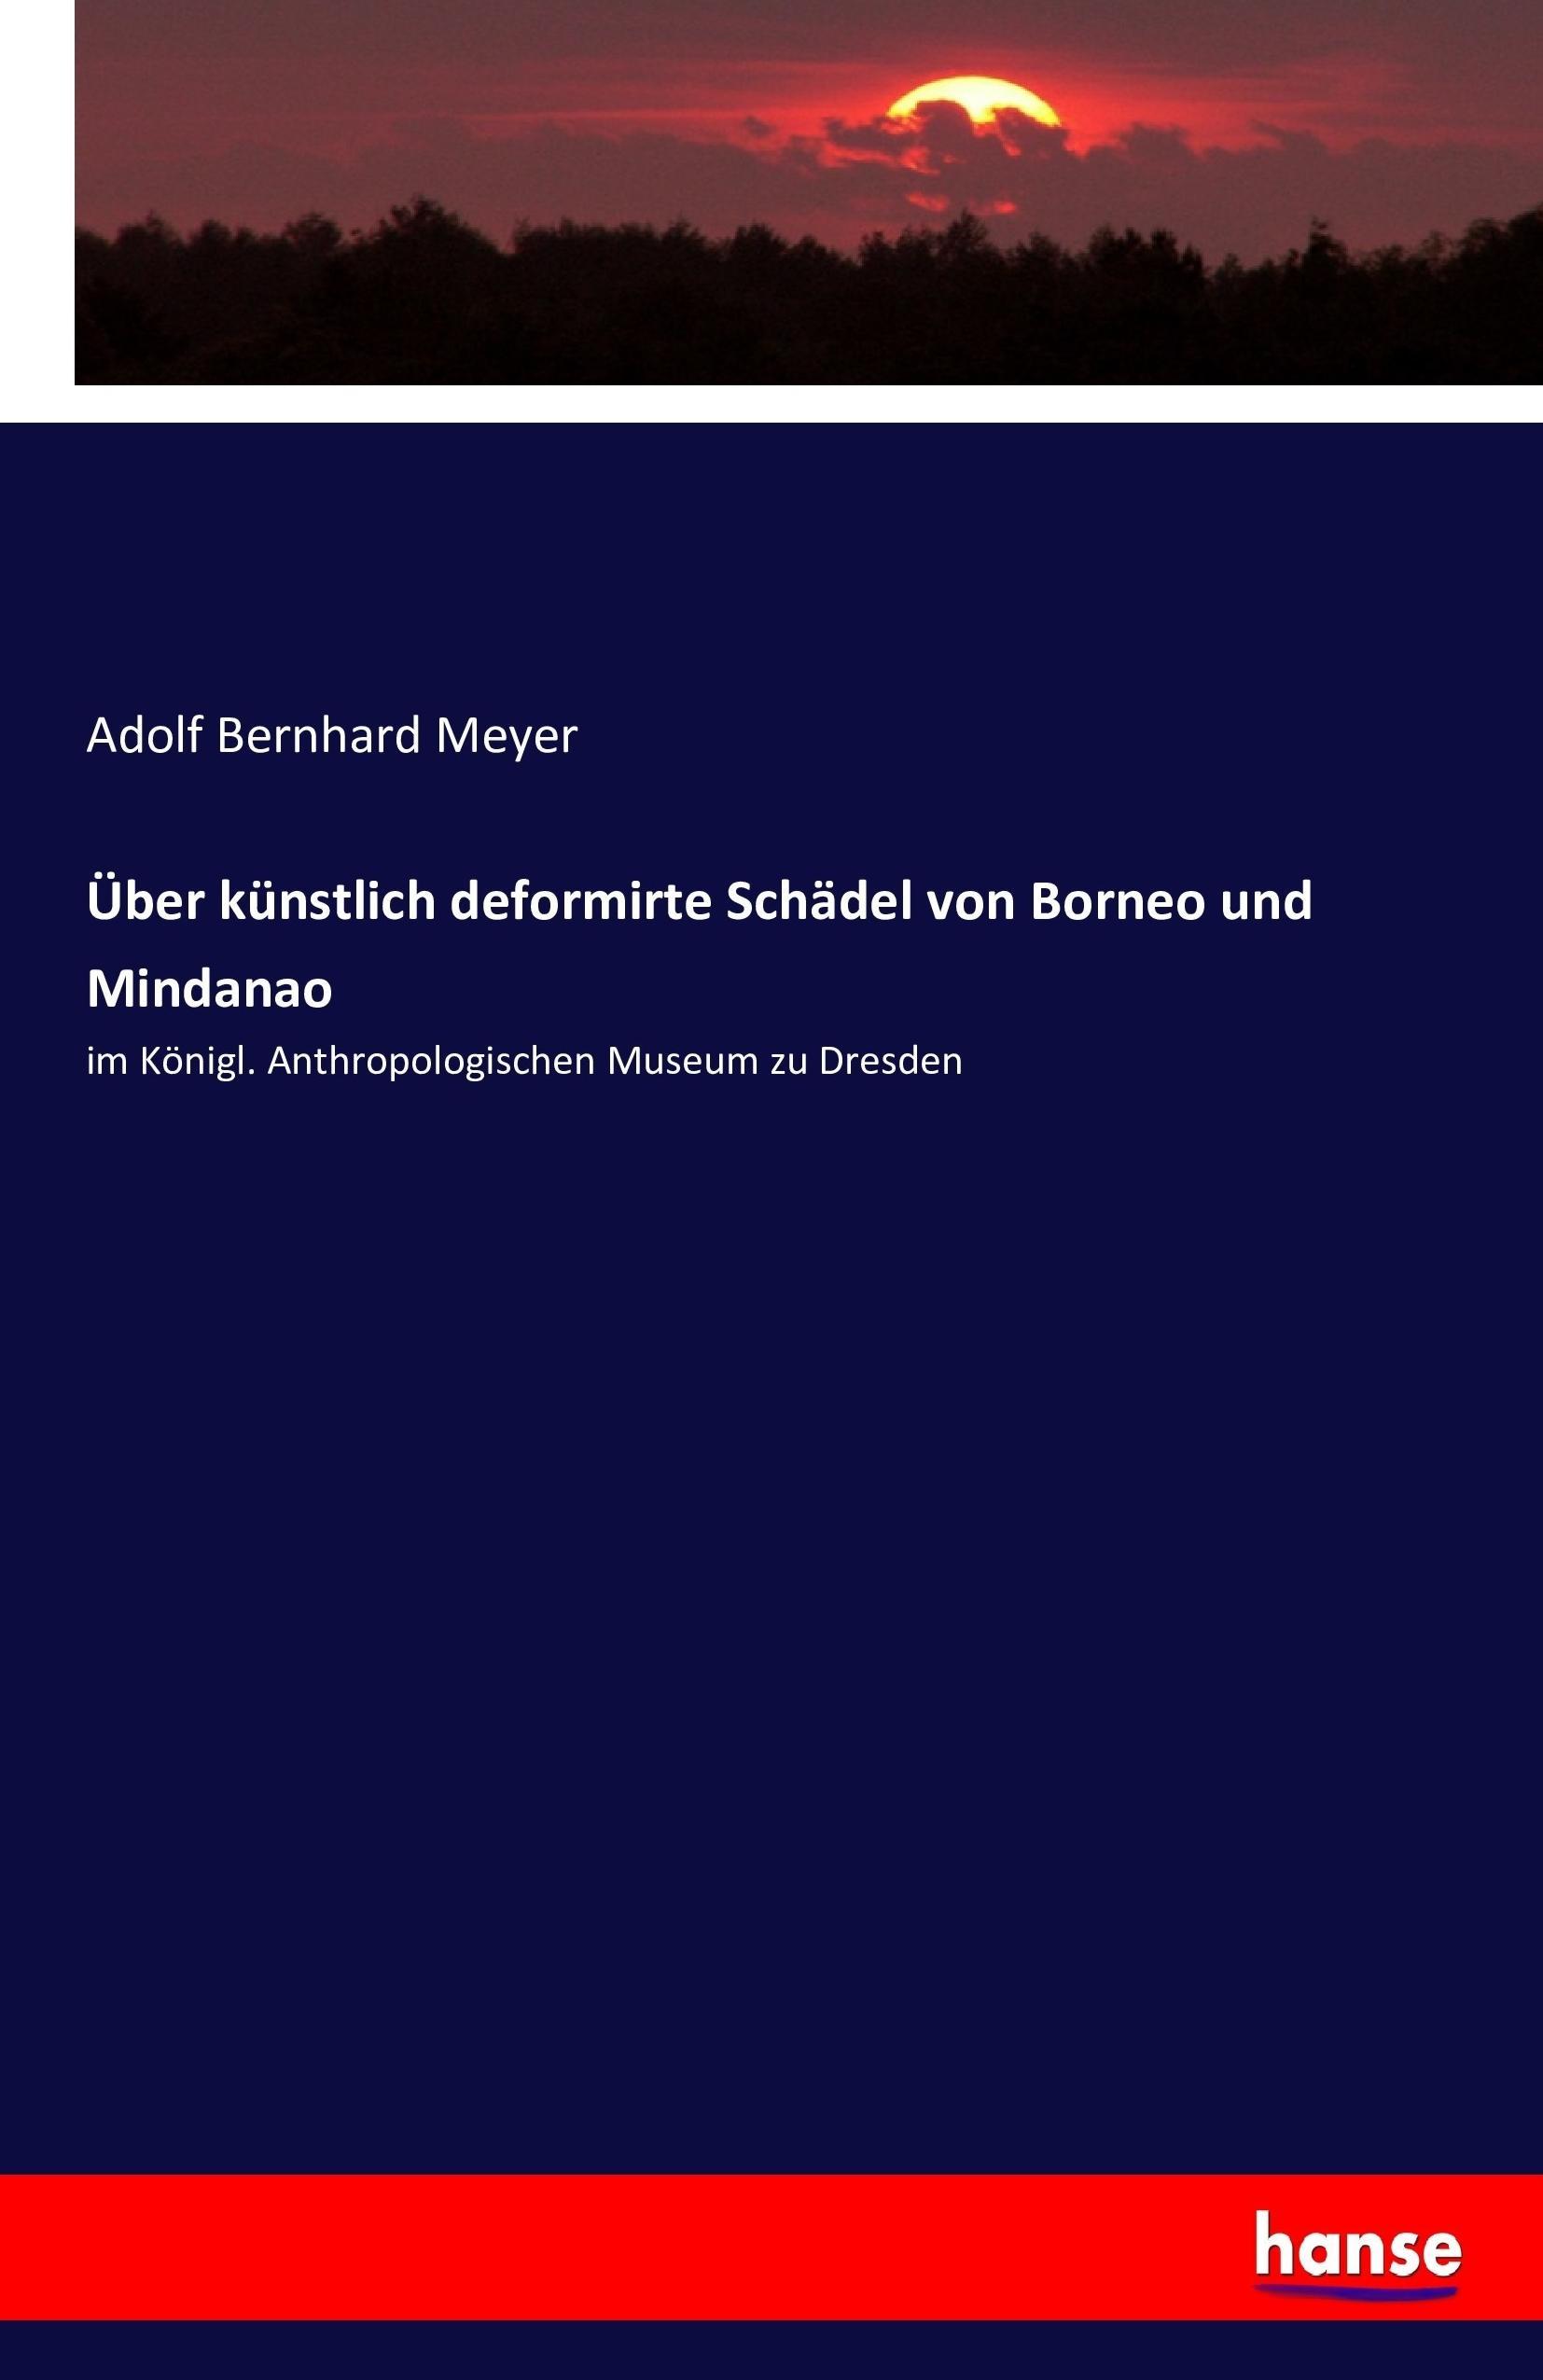 Ueber kuenstlich deformirte Schaedel von Borneo und Mindanao - Meyer, Adolf Bernhard